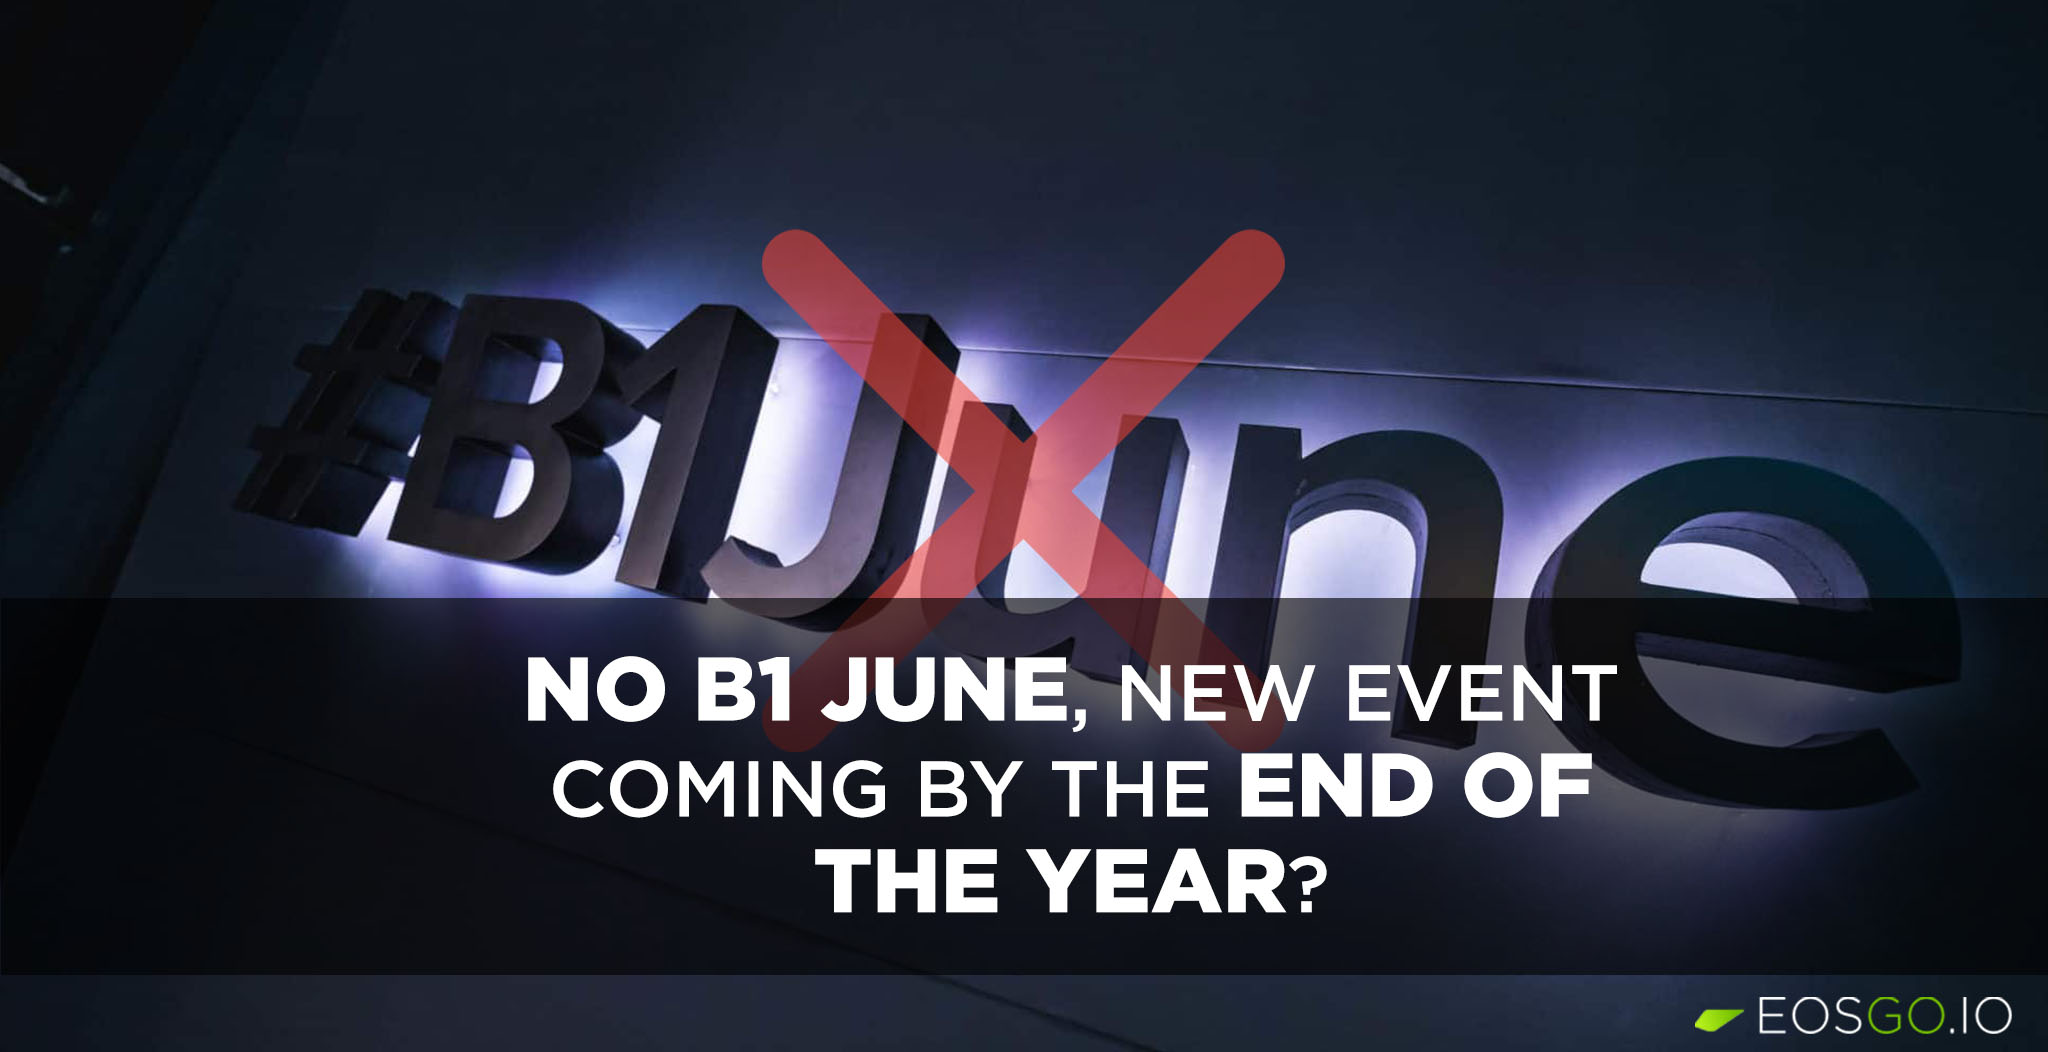 现在都没等到 B1June 的通知，今年会有新活动吗？